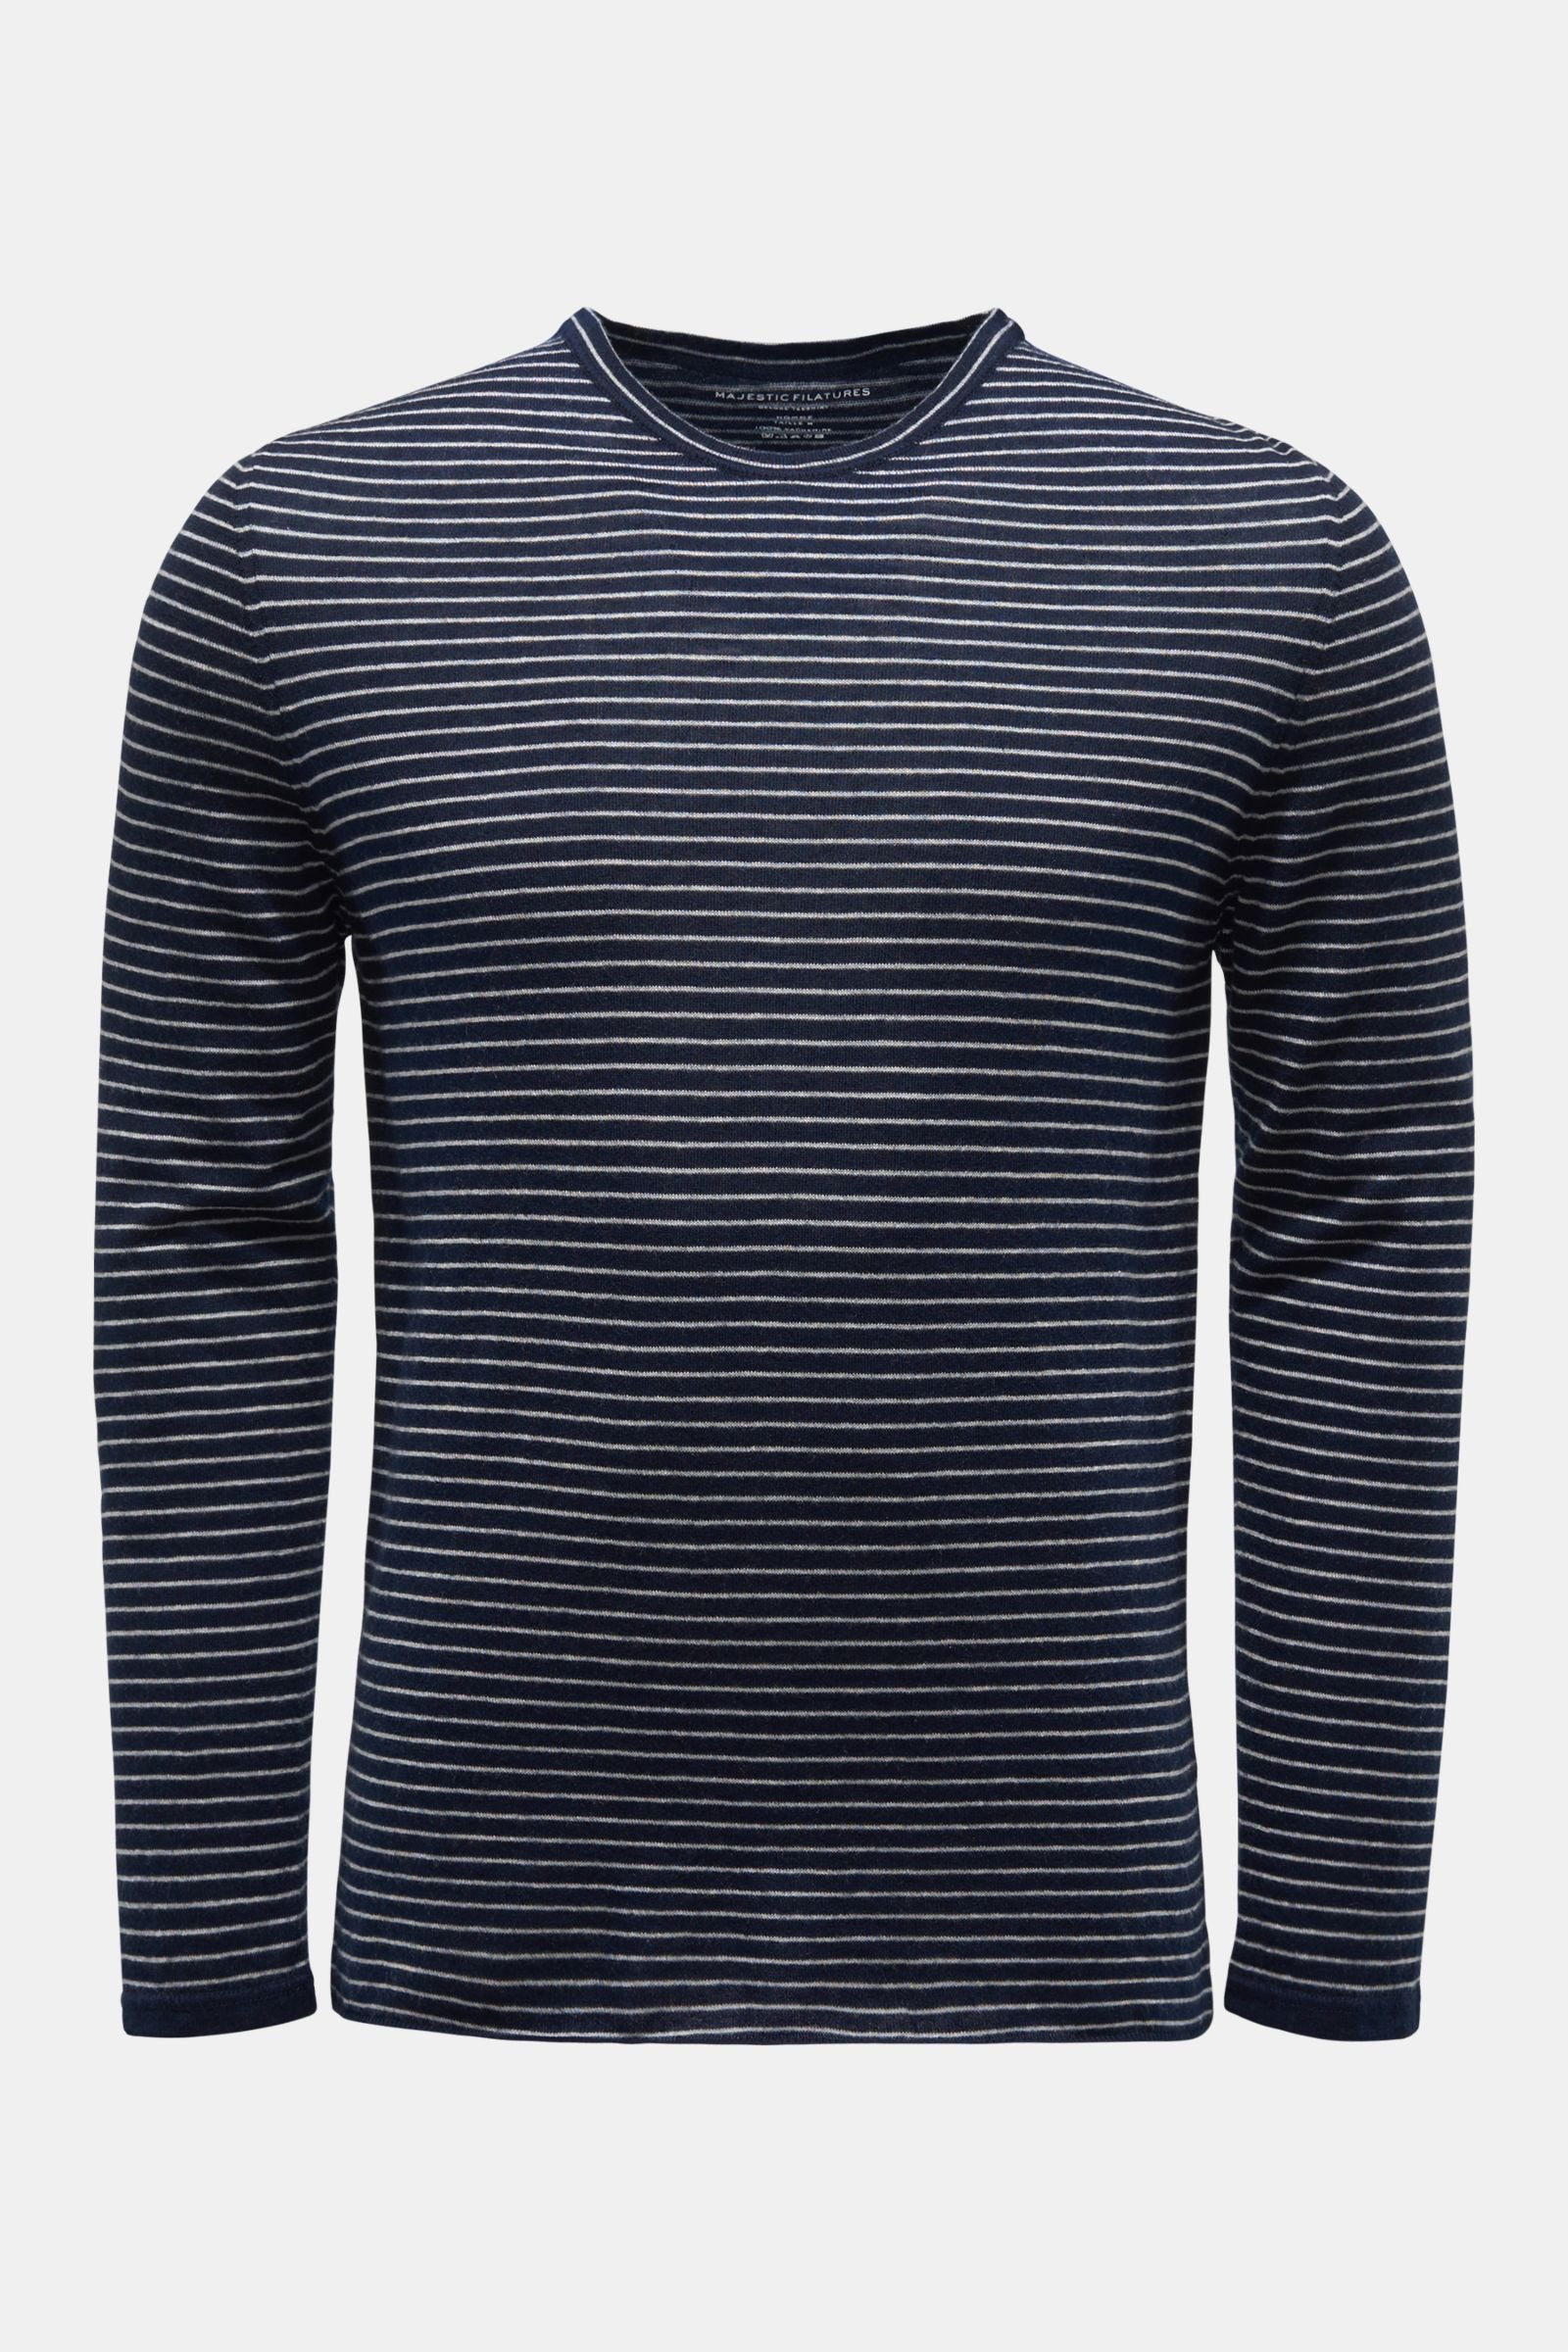 Cashmere fine knit crew neck jumper navy/grey striped